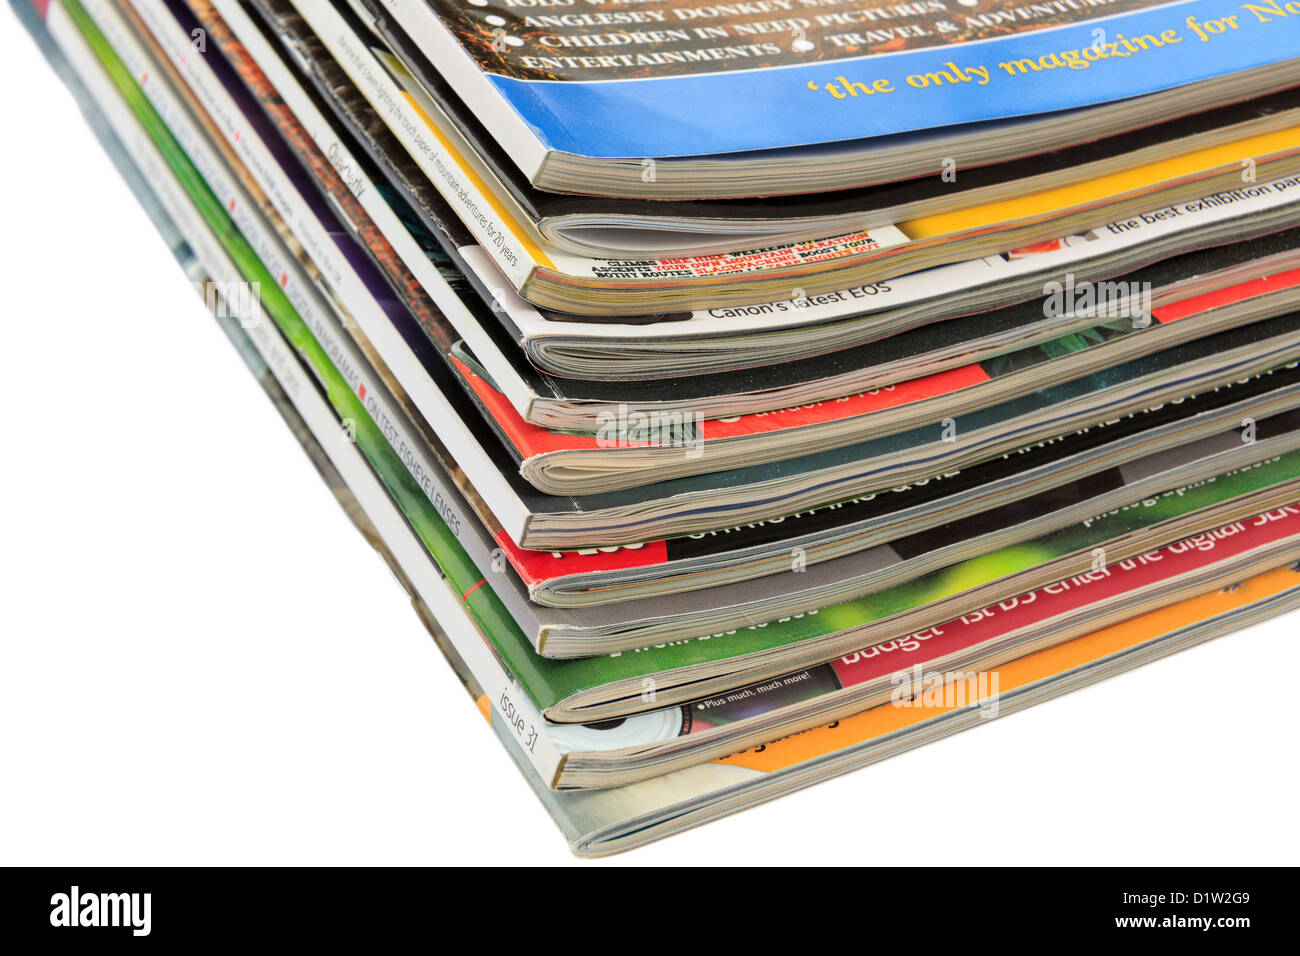 Ein Haufen verschiedener Zeitschriften auf einem einfarbigen weißen Hintergrund. GROSSBRITANNIEN Stockfoto